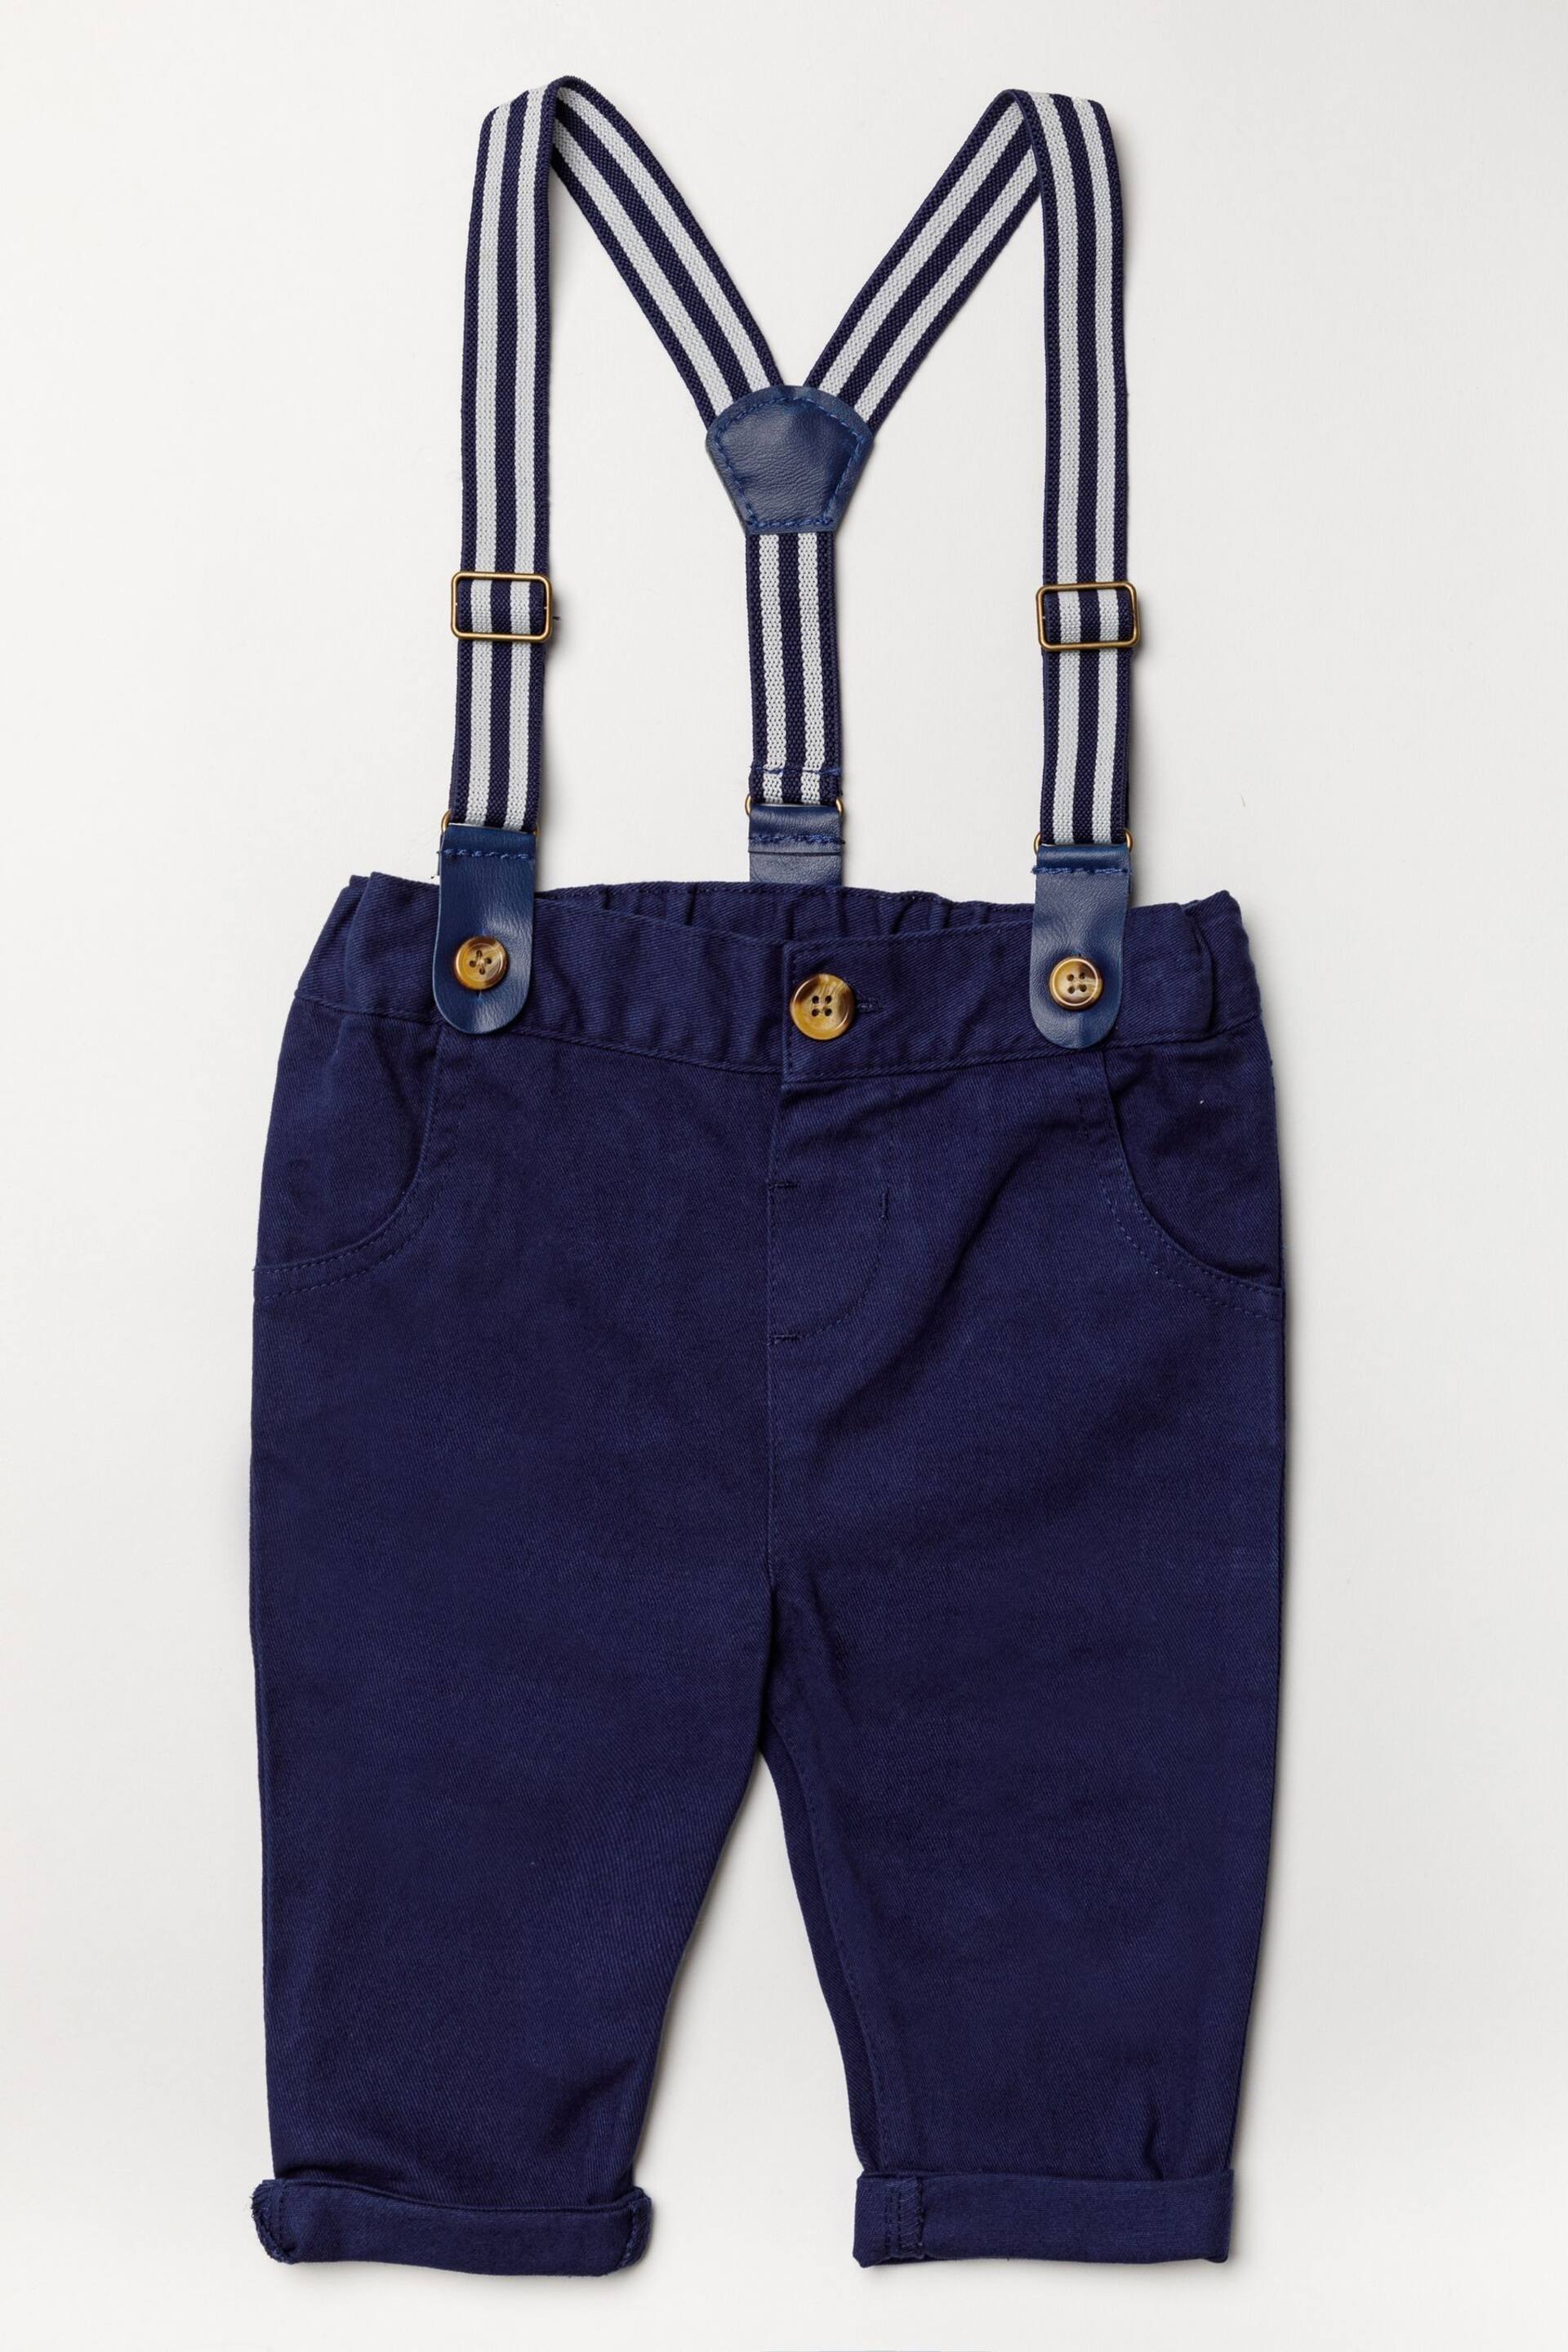 Little Gent Blue Shirt Bodysuit, Bowtie, Trouser And Braces 3 Piece Baby Set - Image 3 of 5